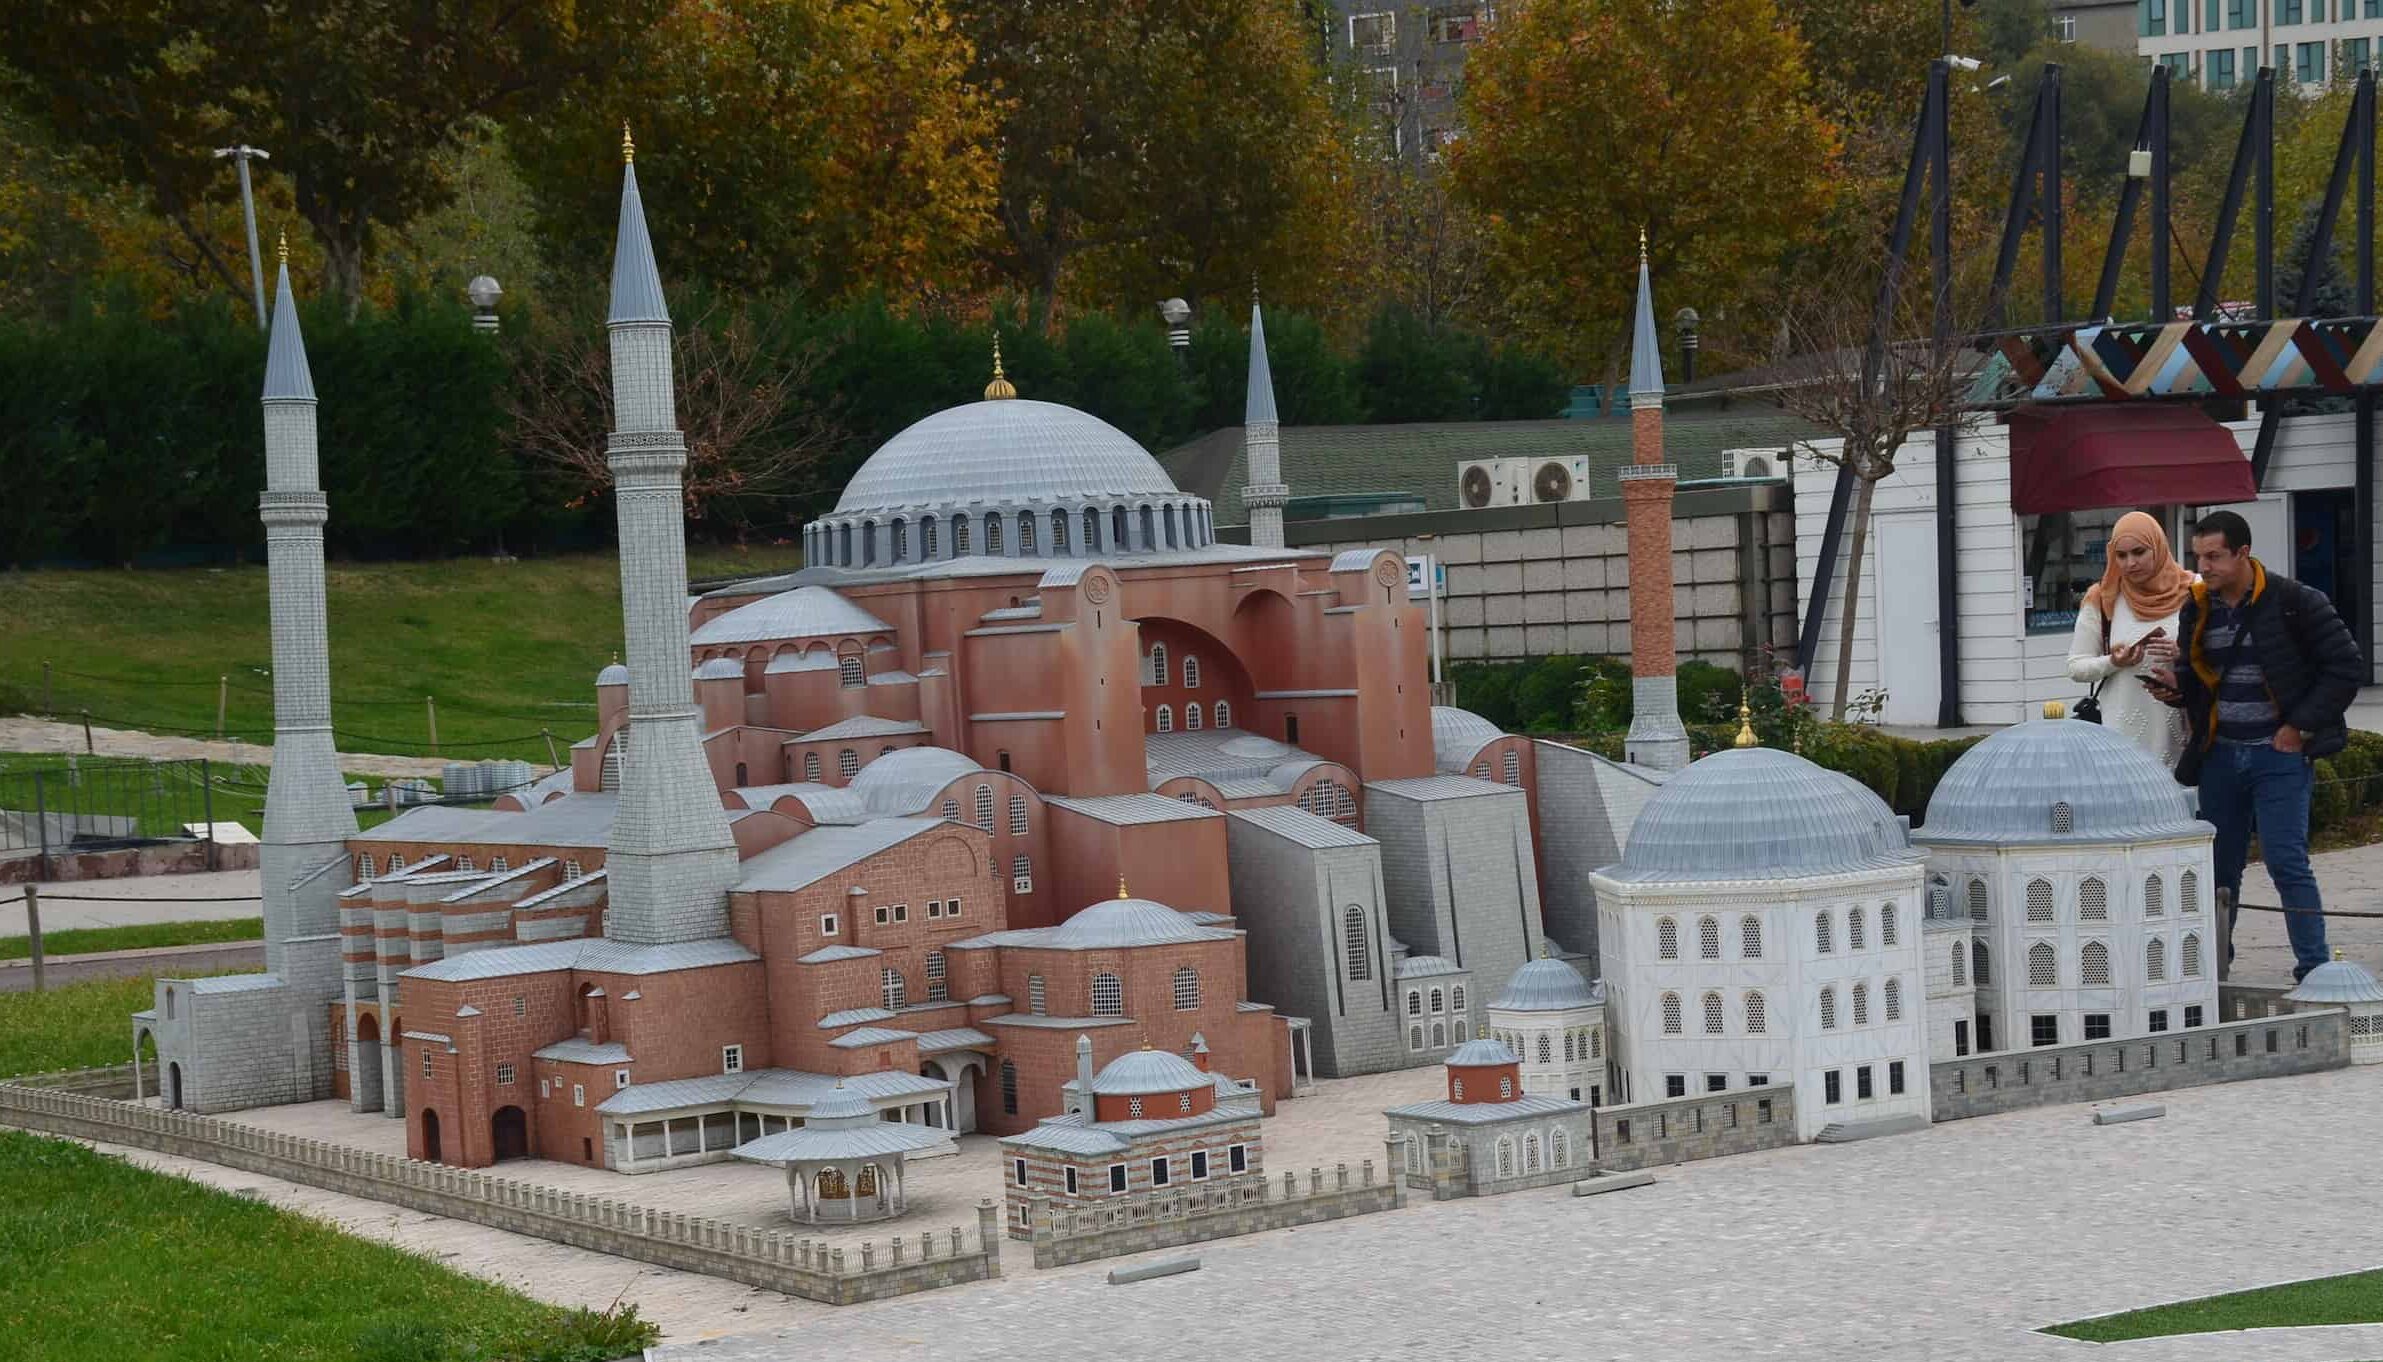 Model of Hagia Sophia, Sultanahmet, 6th century at Miniatürk in Istanbul, Turkey